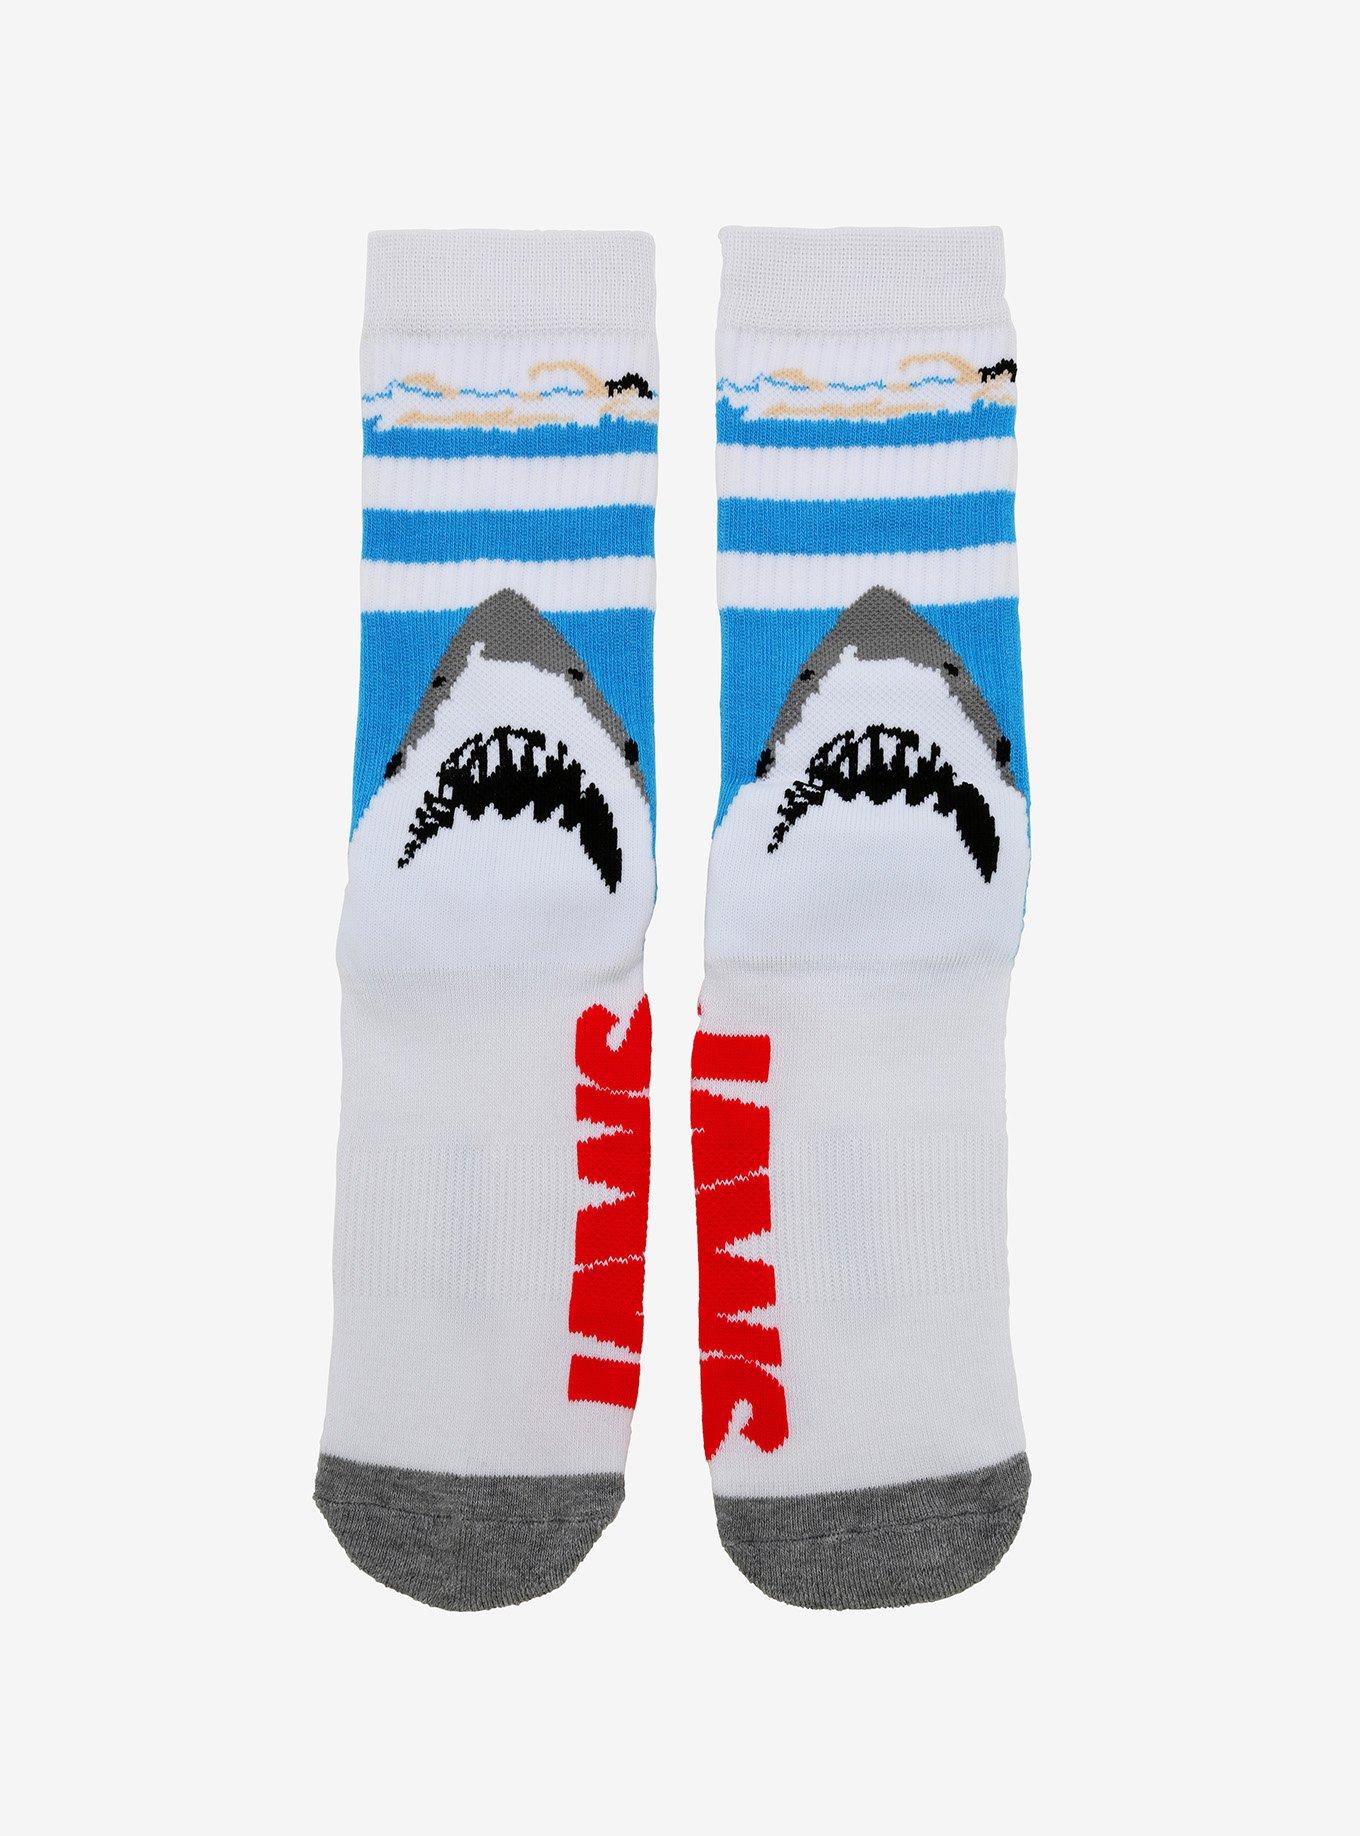 Jaws Poster Crew Socks, , hi-res